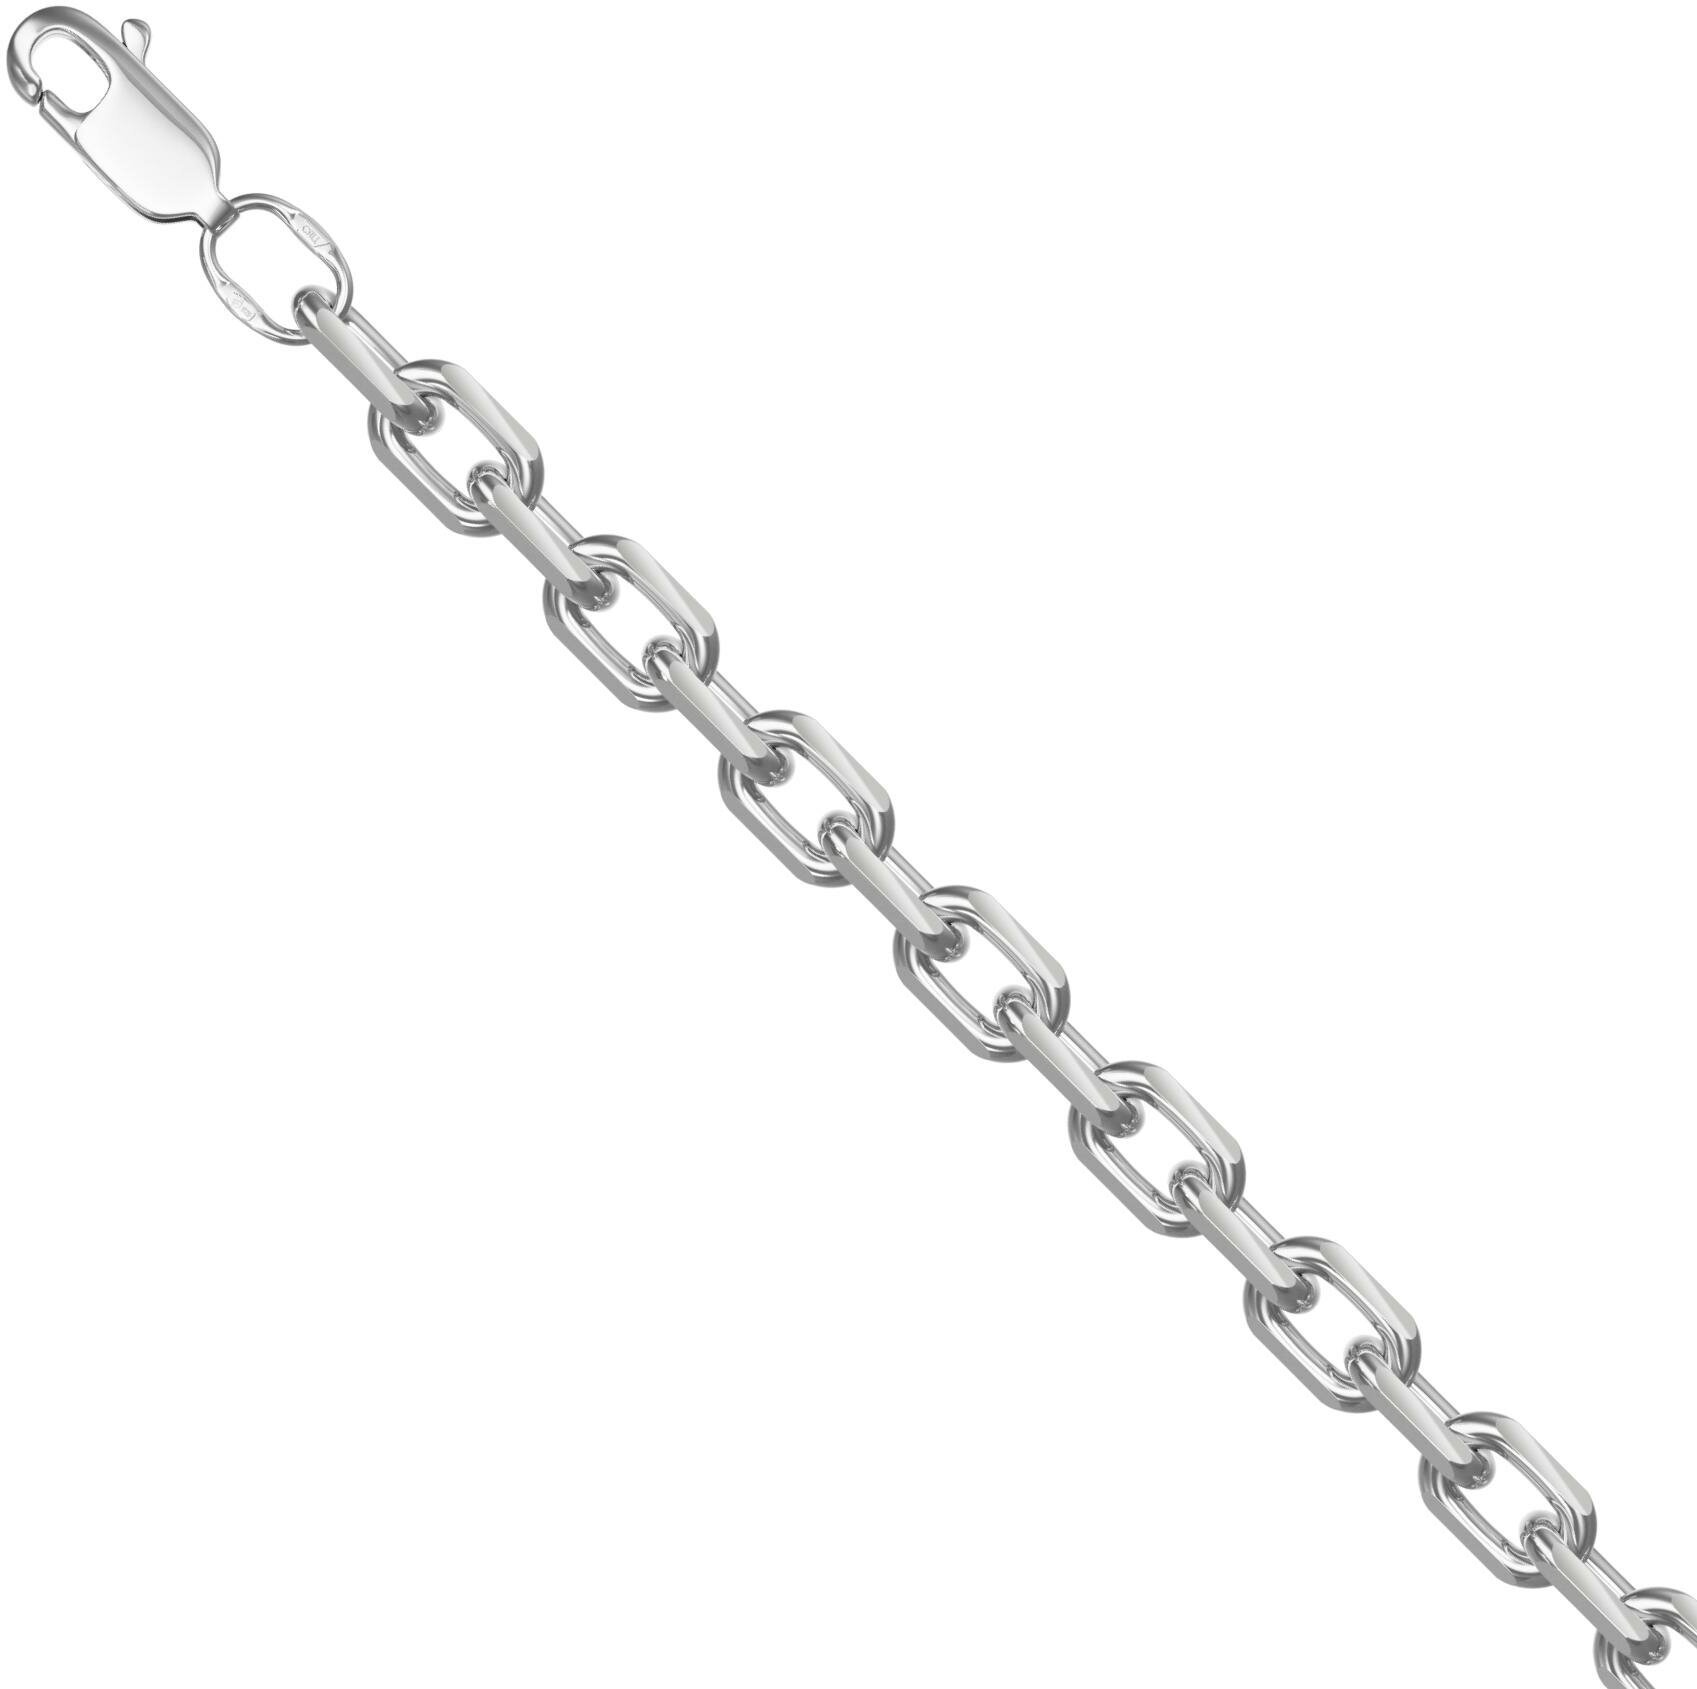 Браслет Krastsvetmet браслет из серебра нб22-206-3 диаметром проволоки 1, серебро, 925 проба, родирование